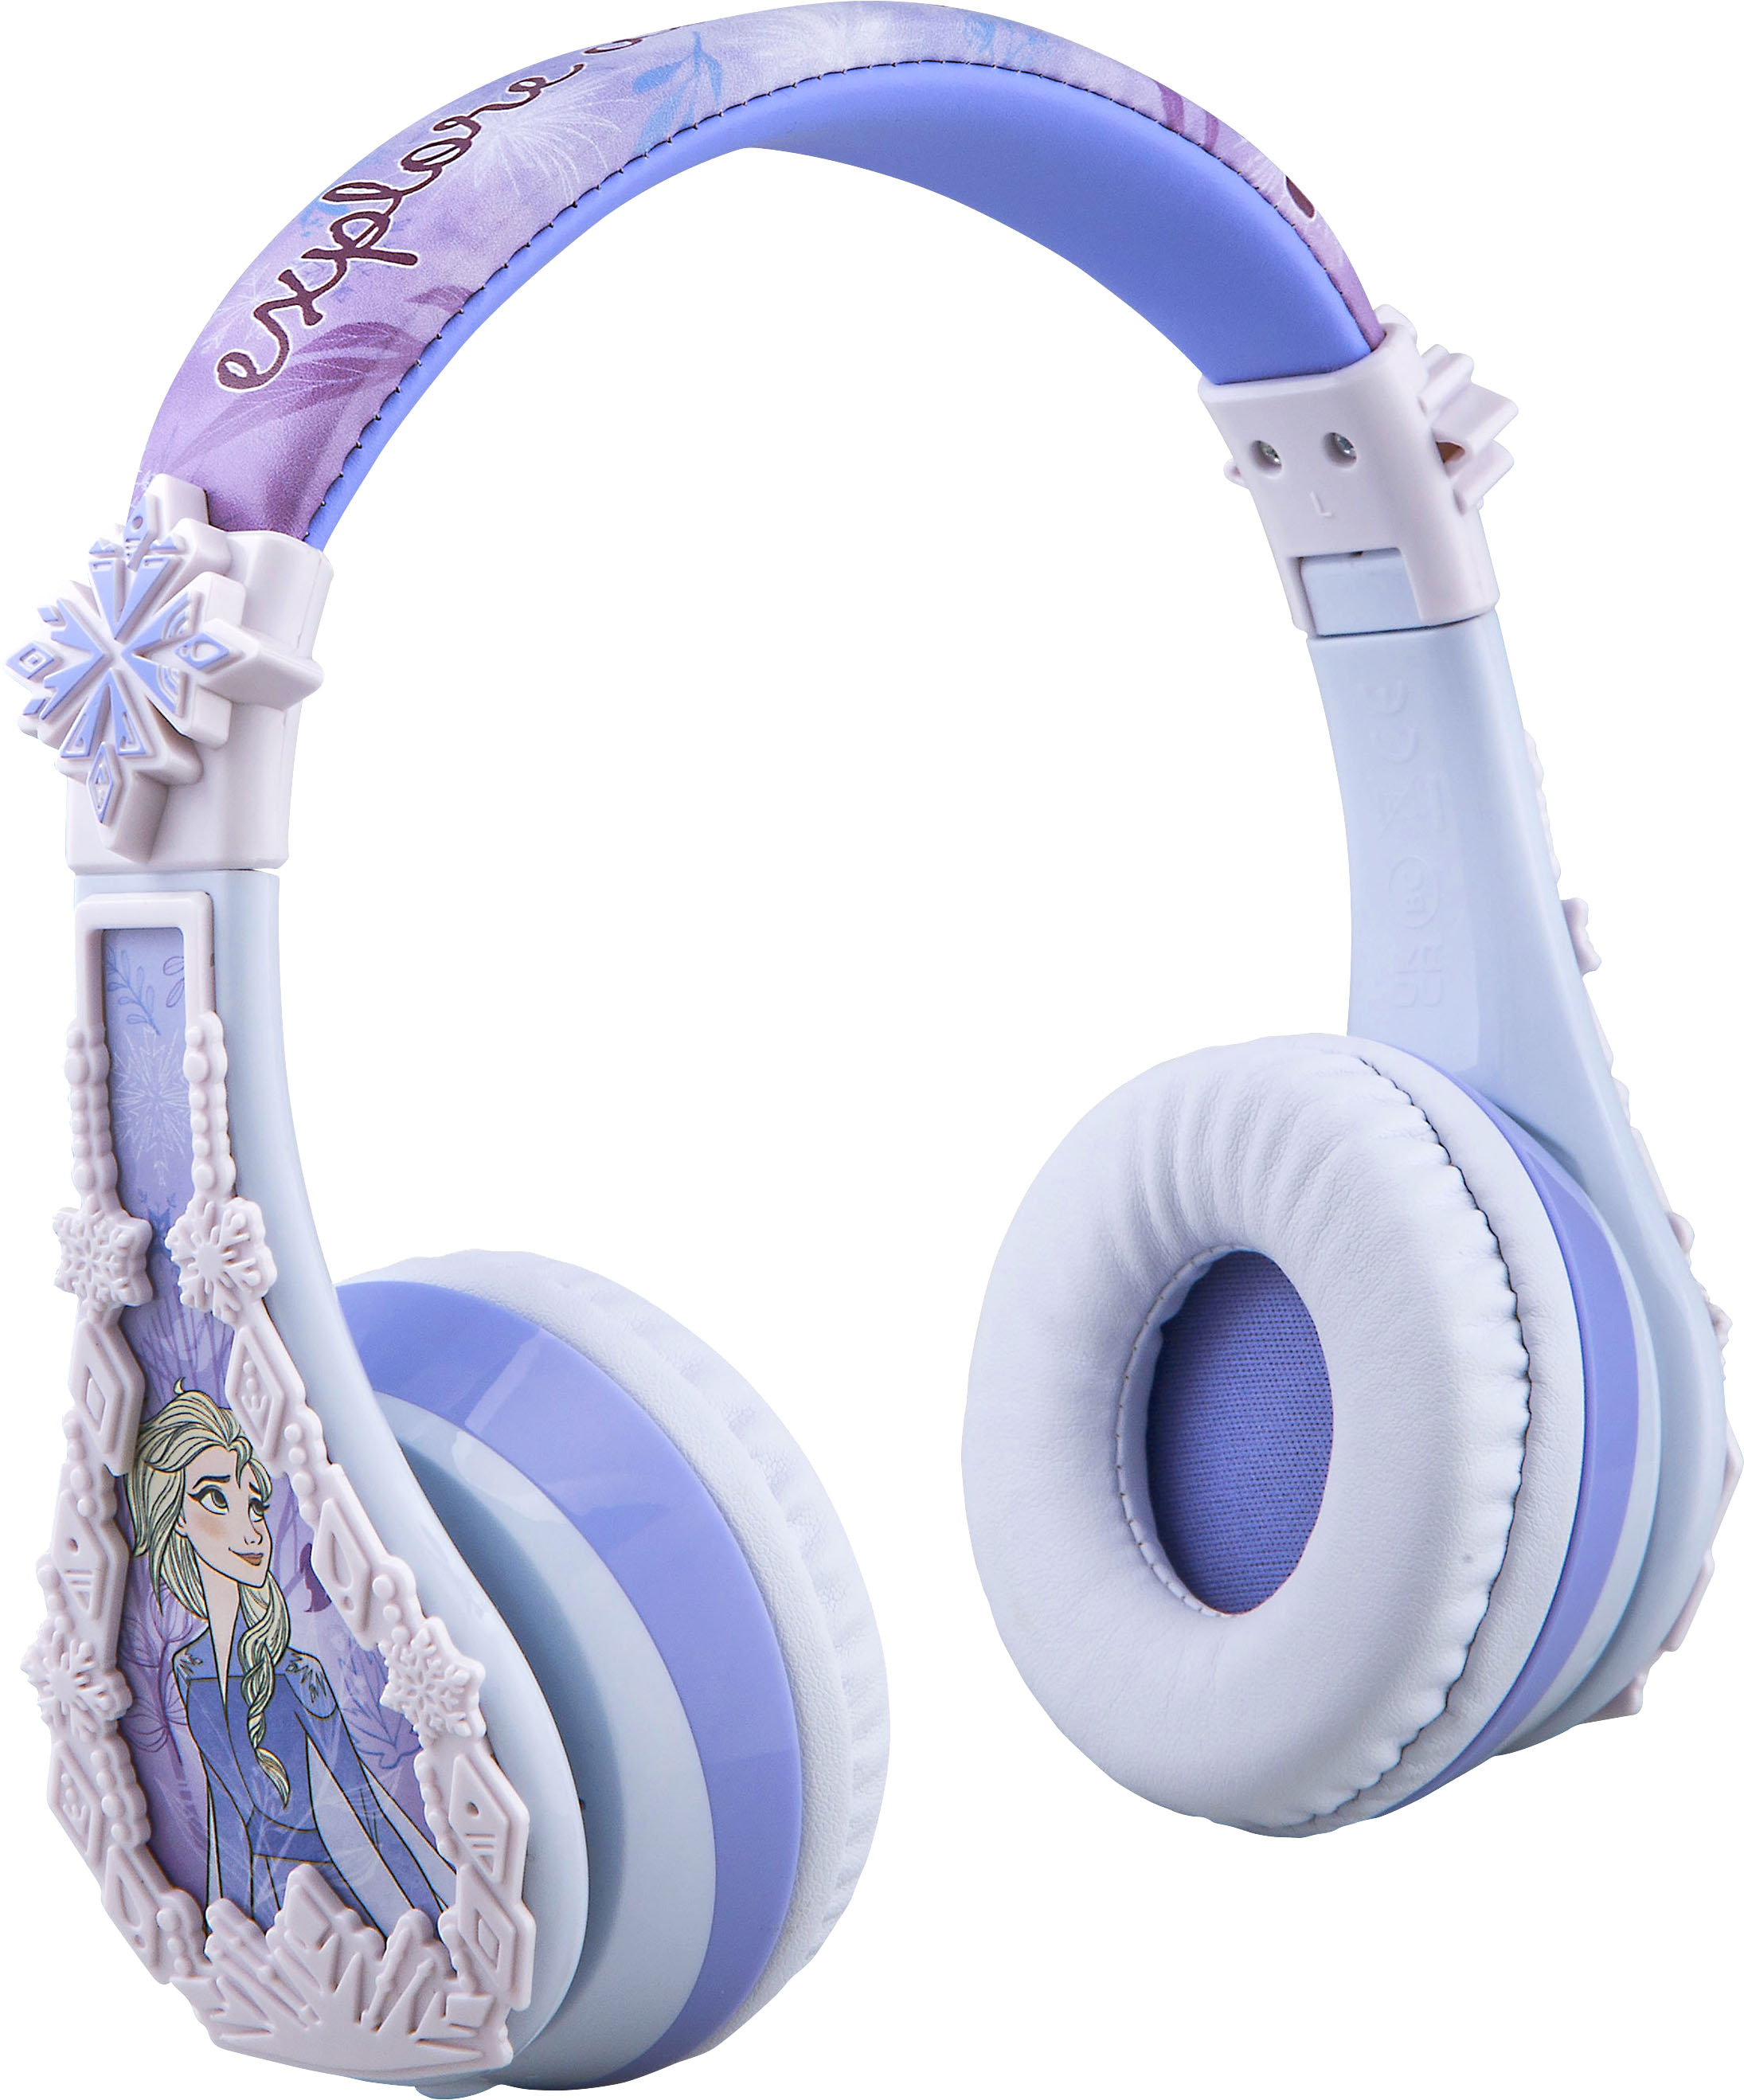 eKids Disney Frozen Bluetooth Headphones light blue FR-B52.FXV21/23 - Best  Buy